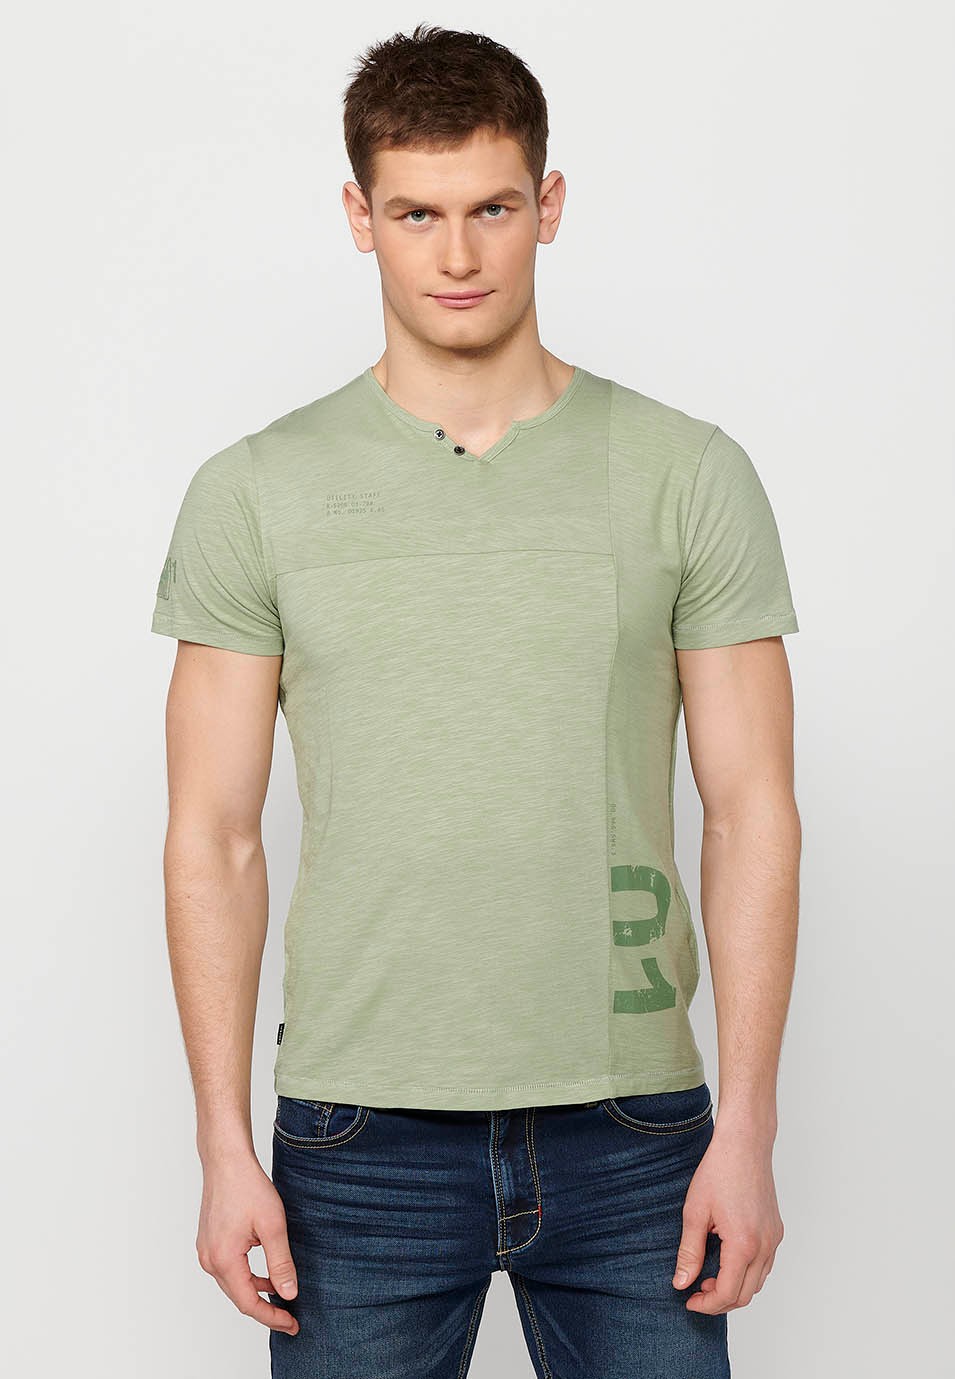 Kakhi Herren-T-Shirt aus Baumwolle mit kurzen Ärmeln, Rundhalsausschnitt und Knopfleiste